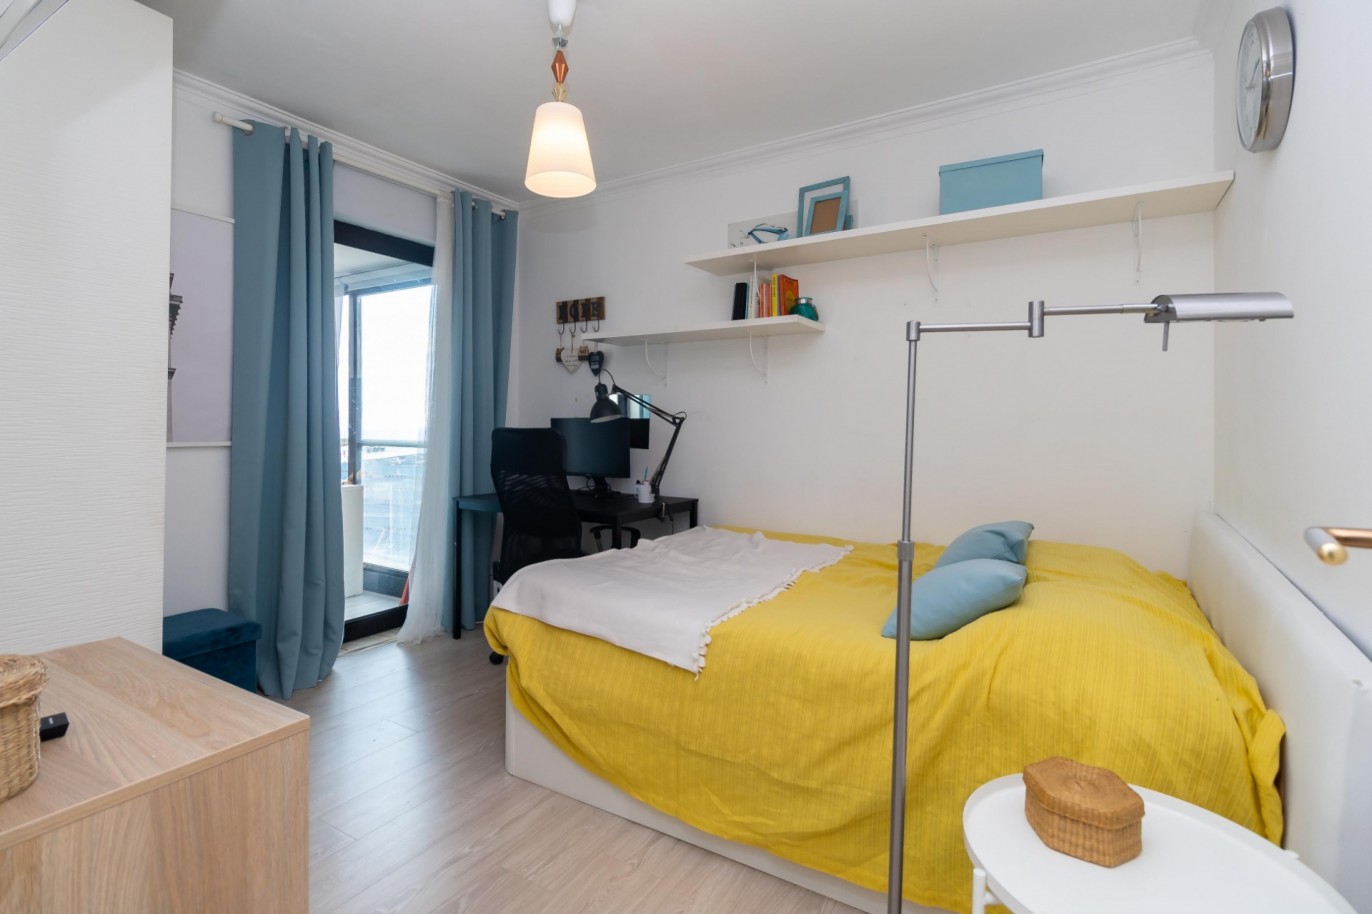 Wohnung mit Mezzanin und Meerblick, zu verkaufen, in Matosinhos Sul, Porto, Portugal_210217